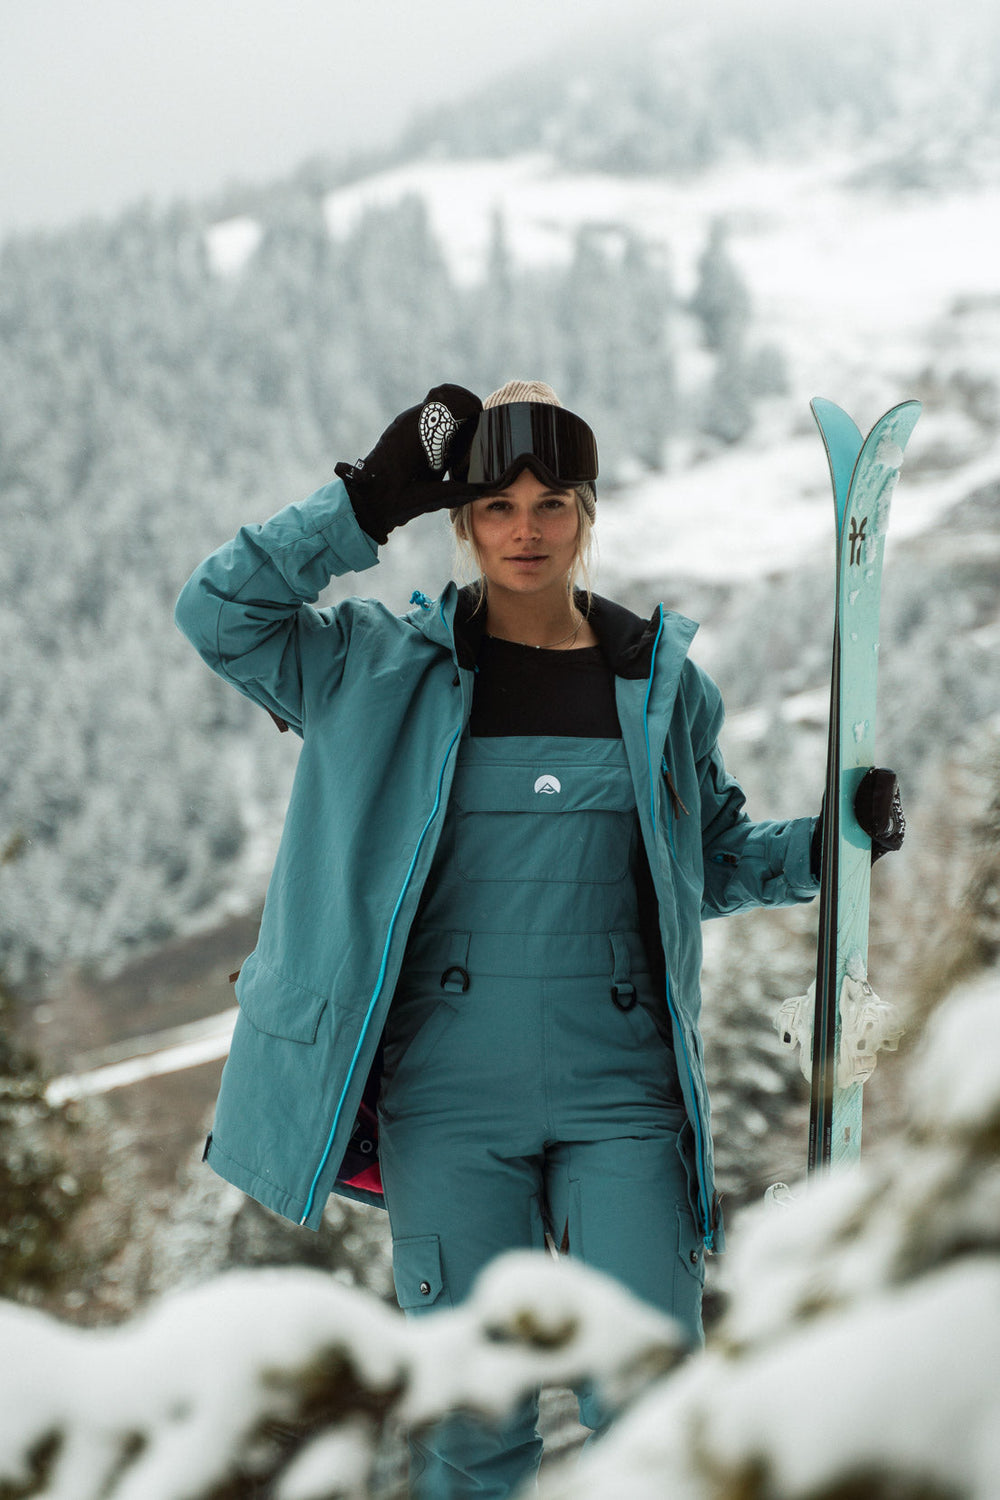 kirnusino Ski Jackets for Women Snow Coat for Women Windbreaker